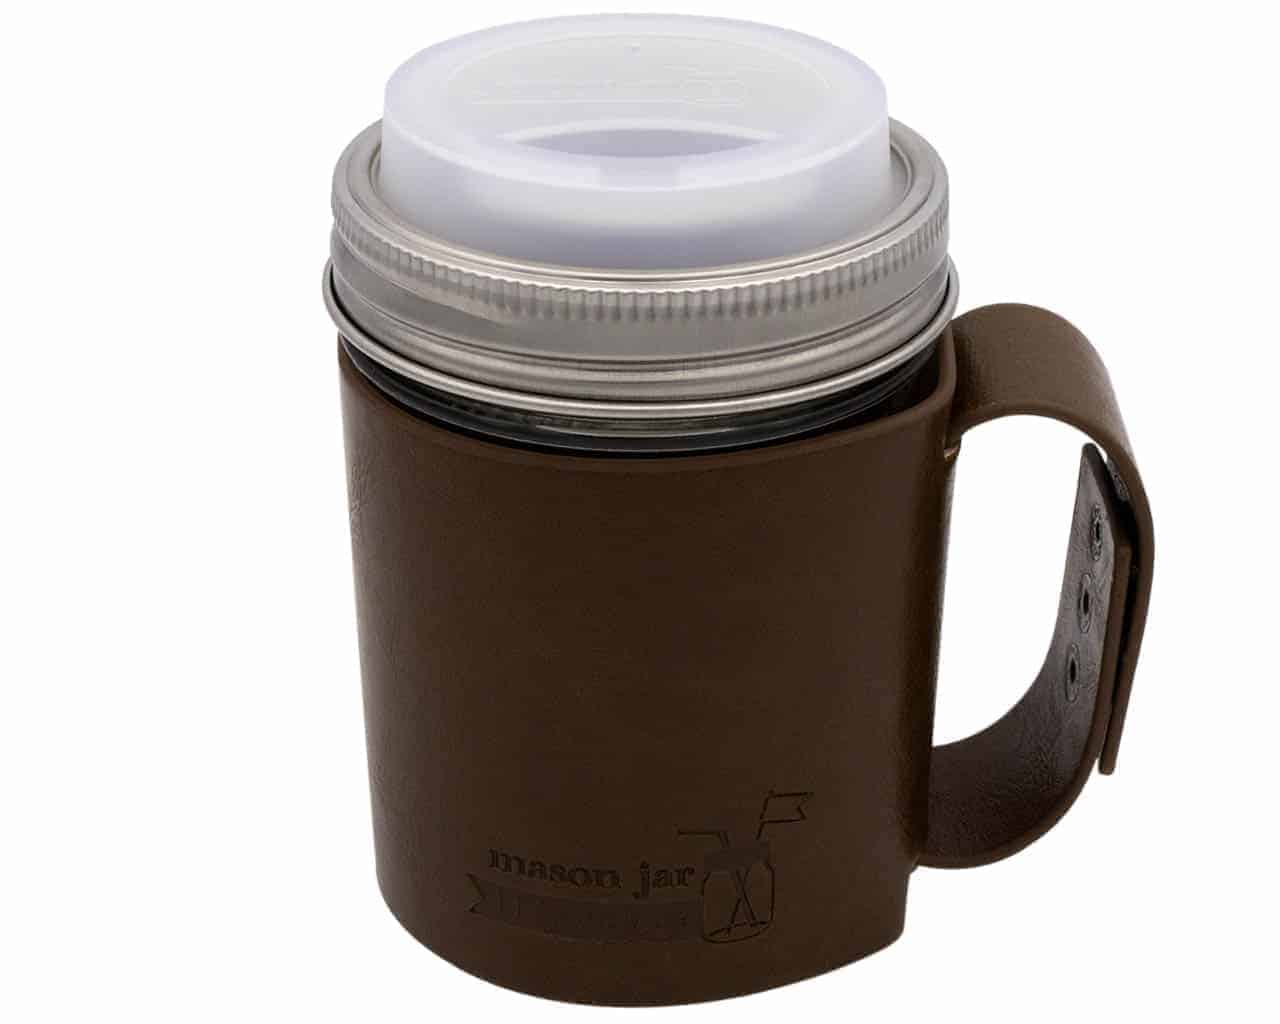 Mason Jar Lifestyle Faux Leather Travel Mug Set